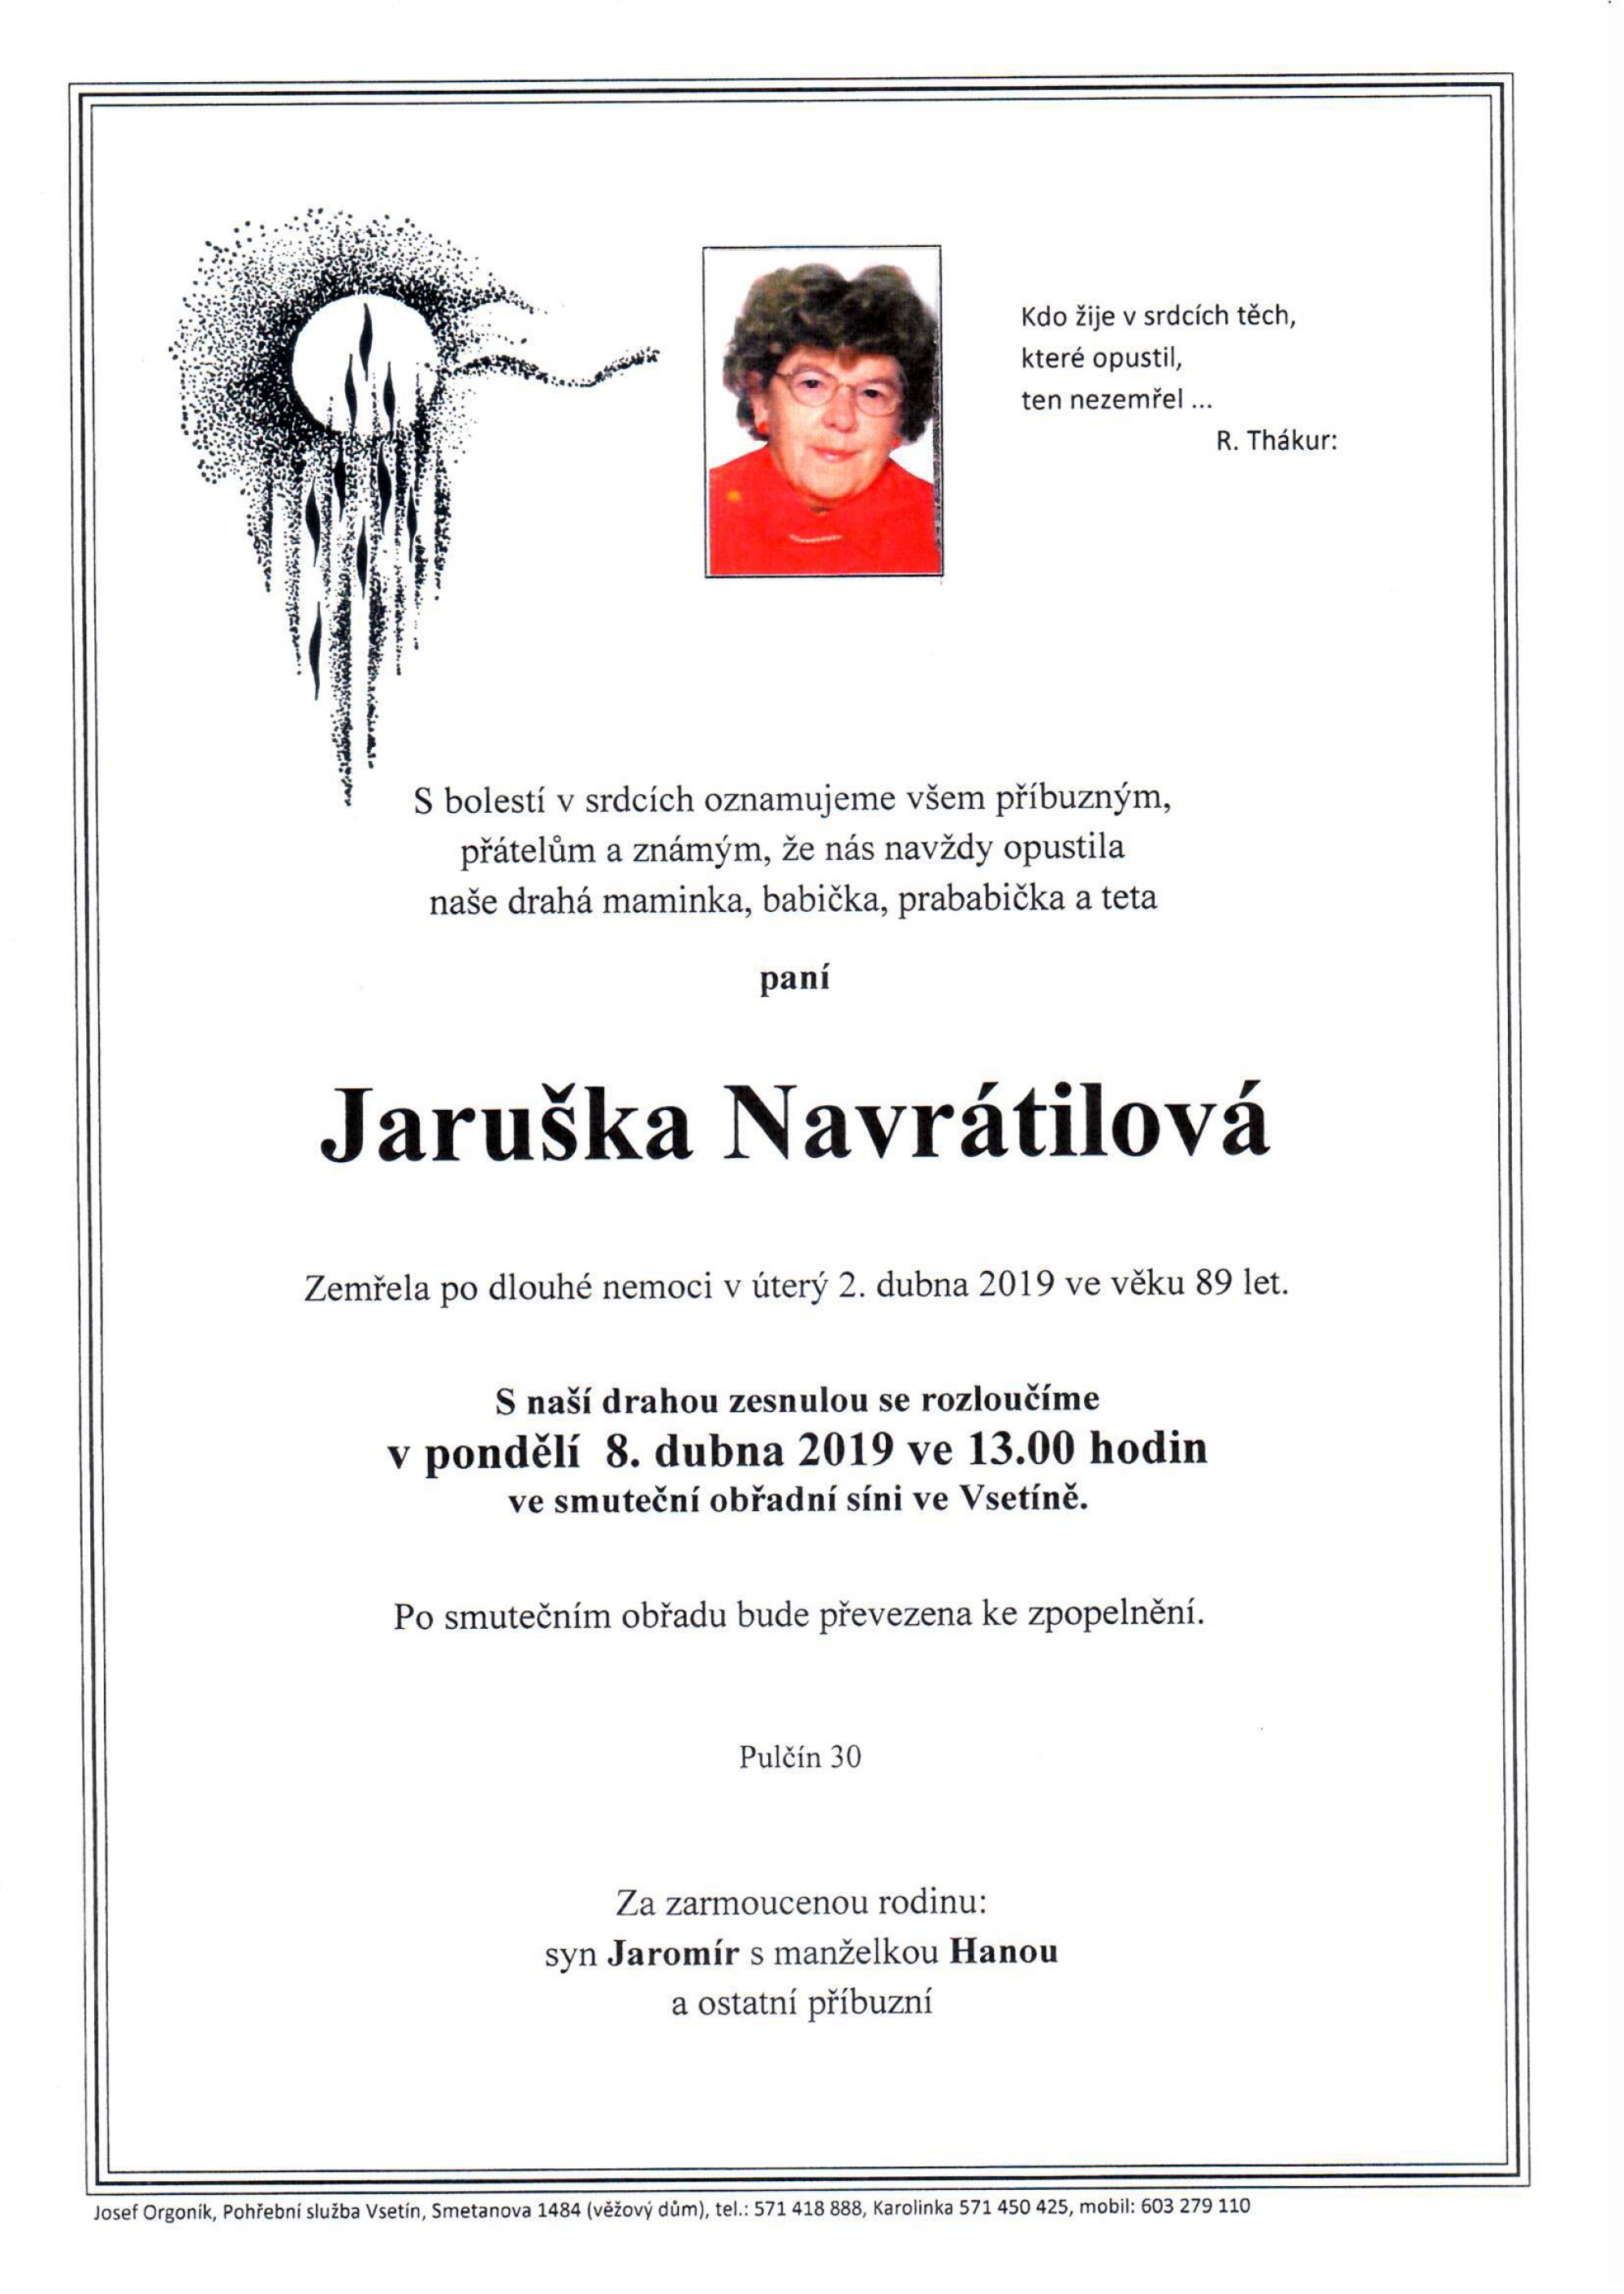 Jaruška Navrátilová